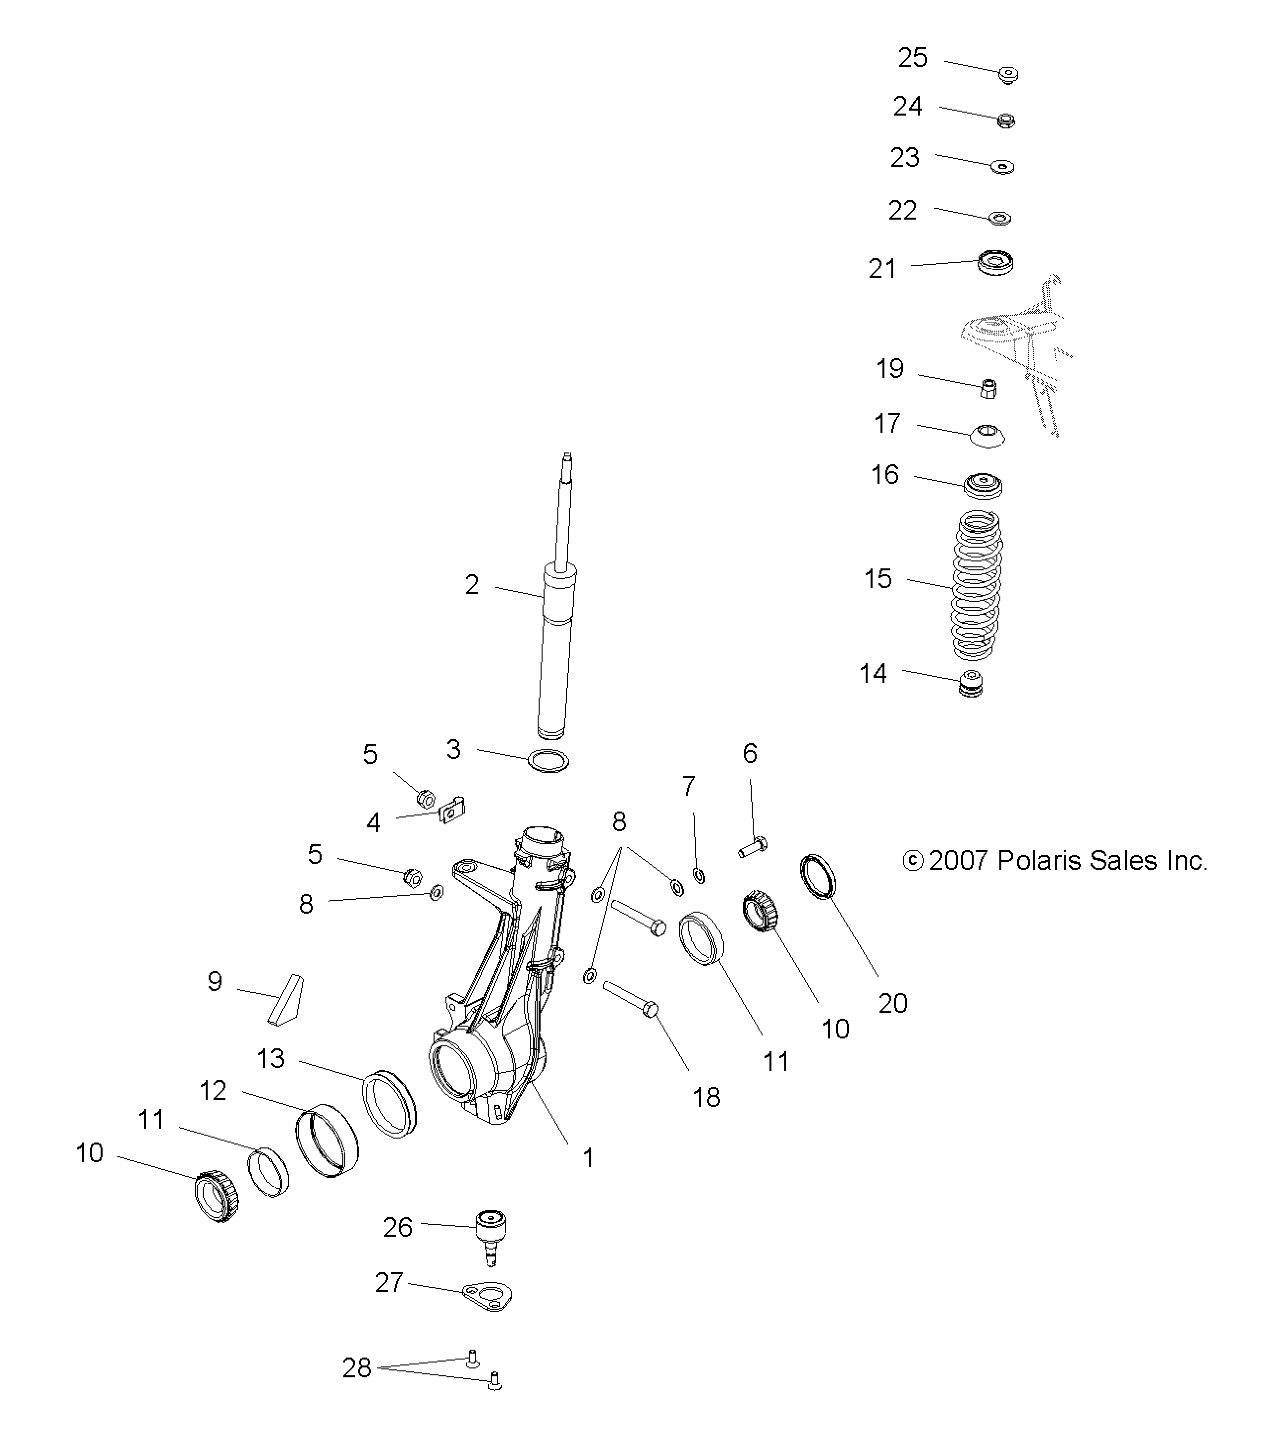 Foto diagrama Polaris que contem a peça 5810439